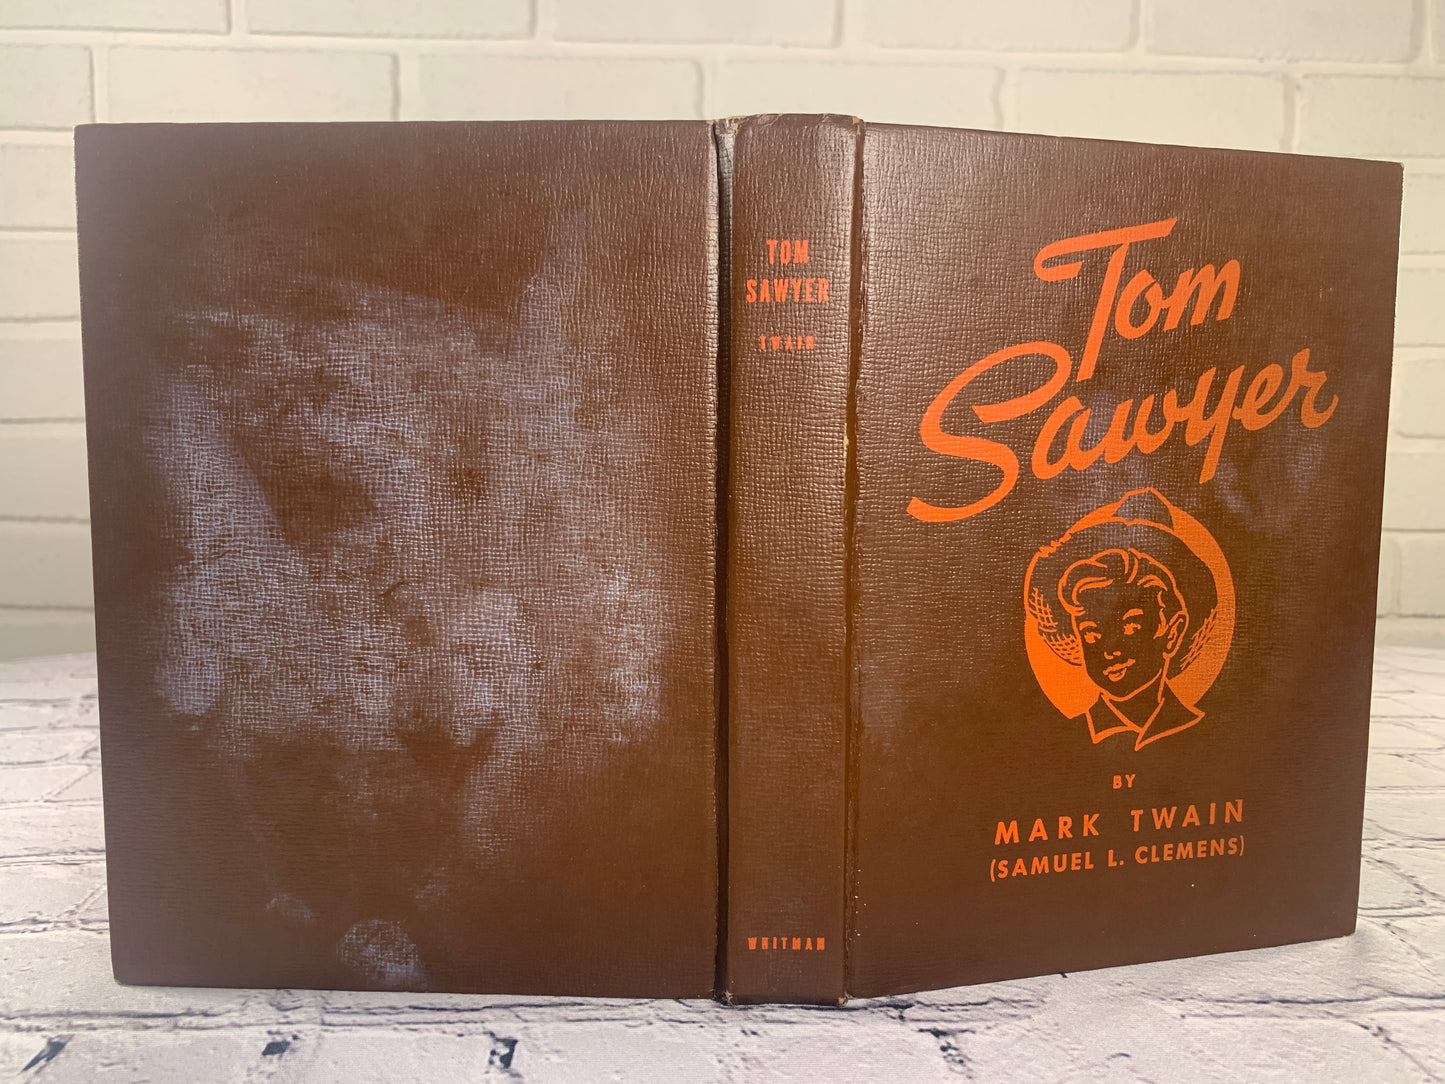 Tom Sawyer by Mark Twain (Samuel L. Clemens) [1931 · Whitman]